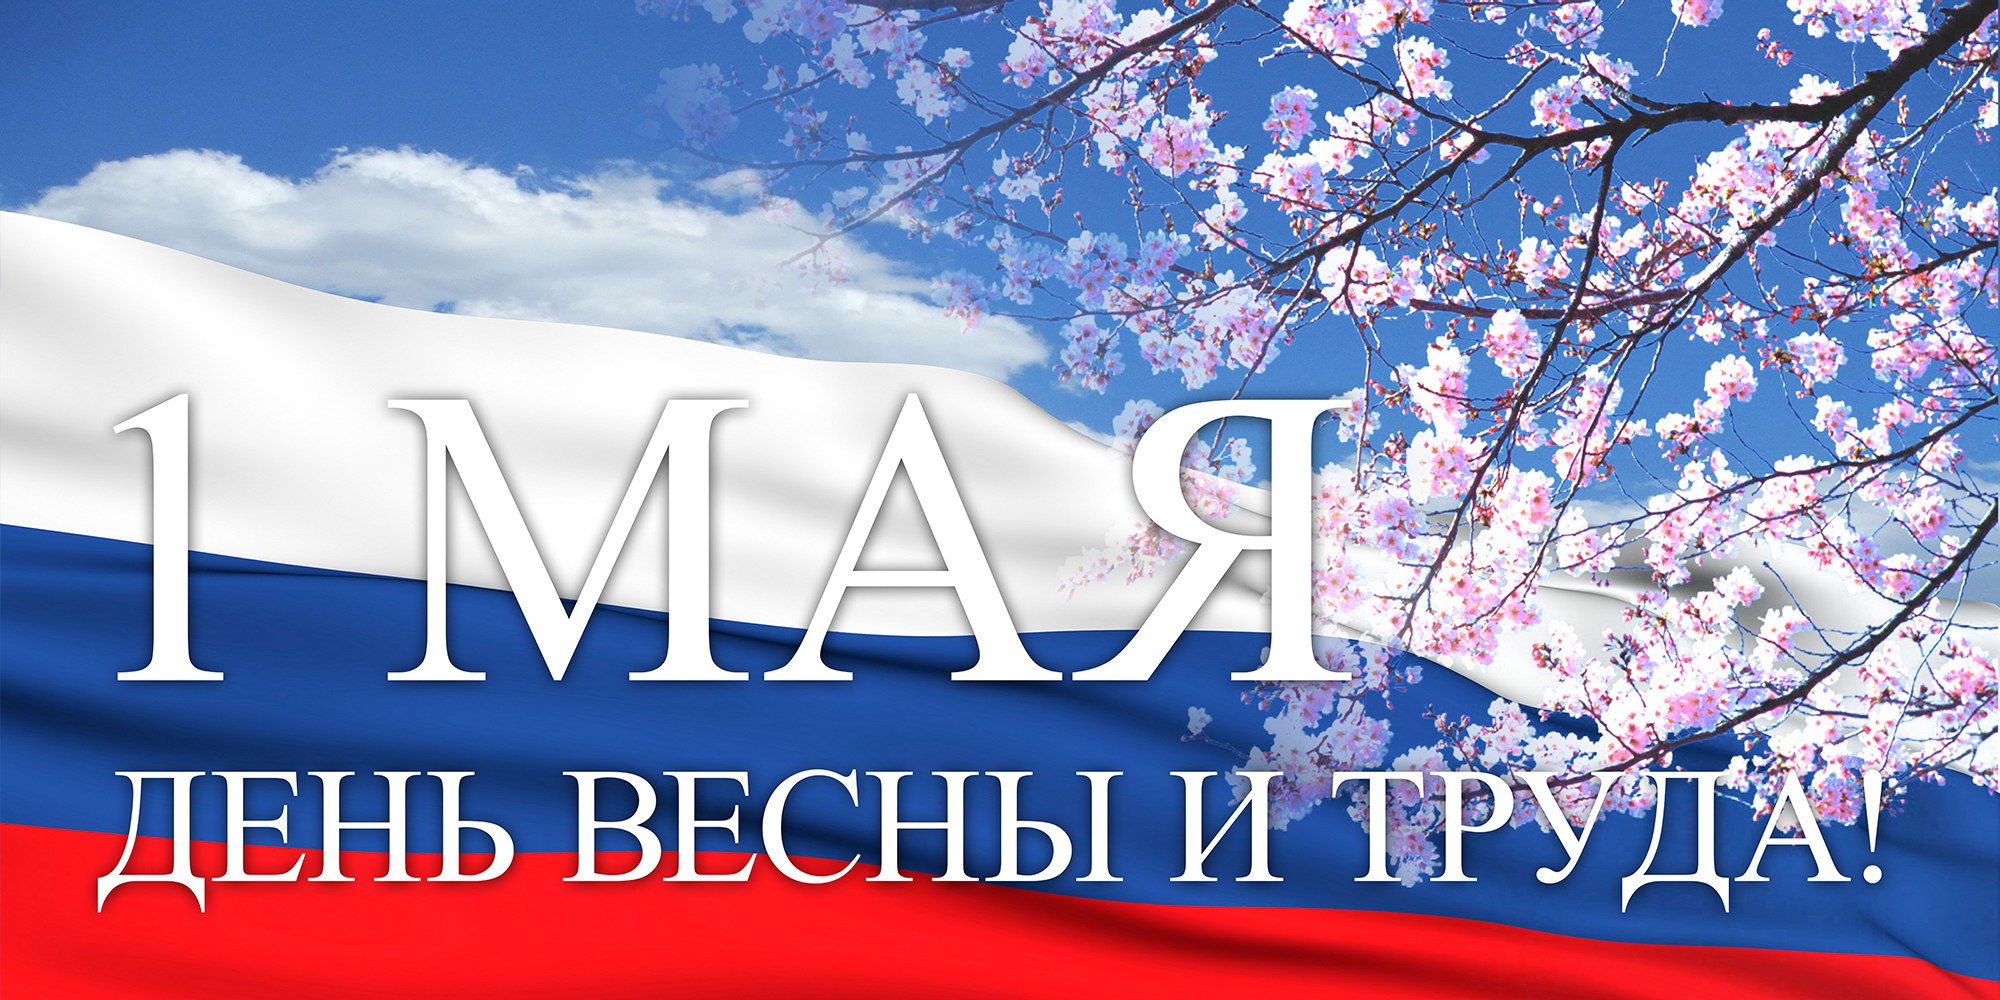 1 мая праздник мира и труда , открытки с праздником 1 мая флаг  1 мая праздник мира и труда , открытки , картинки с праздником 1 мая , с изображением на открытке флага России белый , синий , красный цвет , 1 мая цифра один .